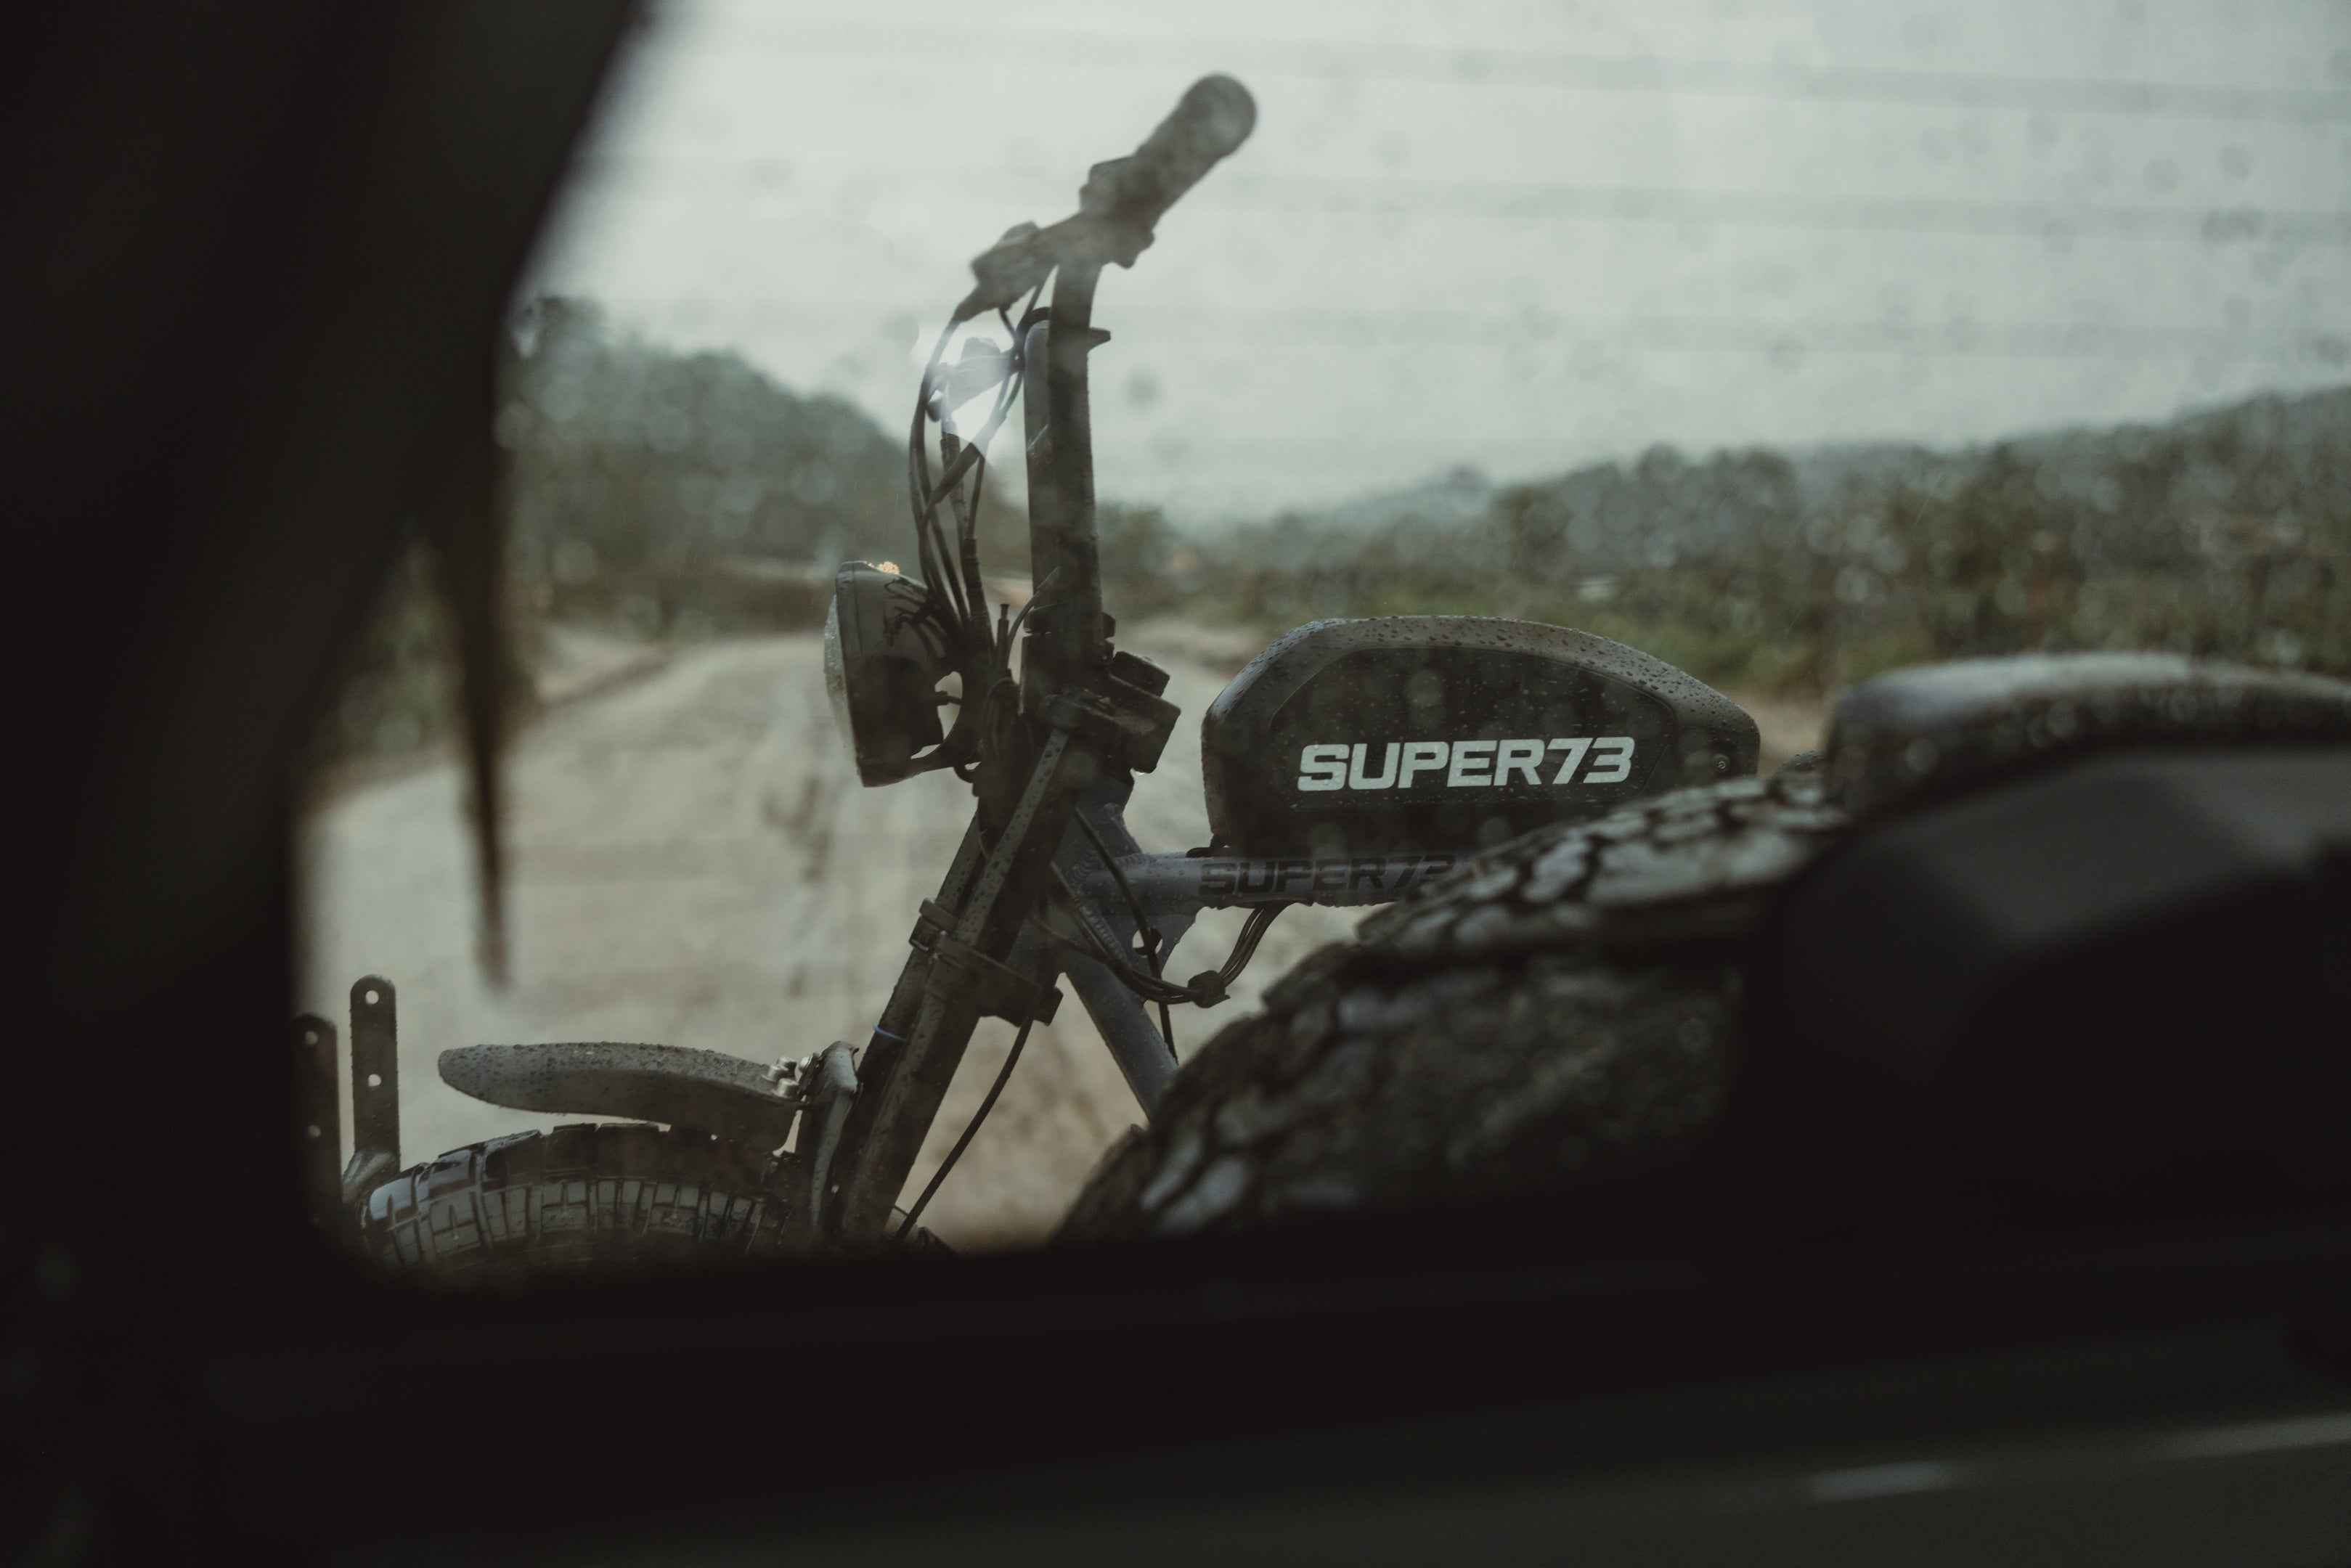 The Super 73 Electric Motorbike – super73.jp